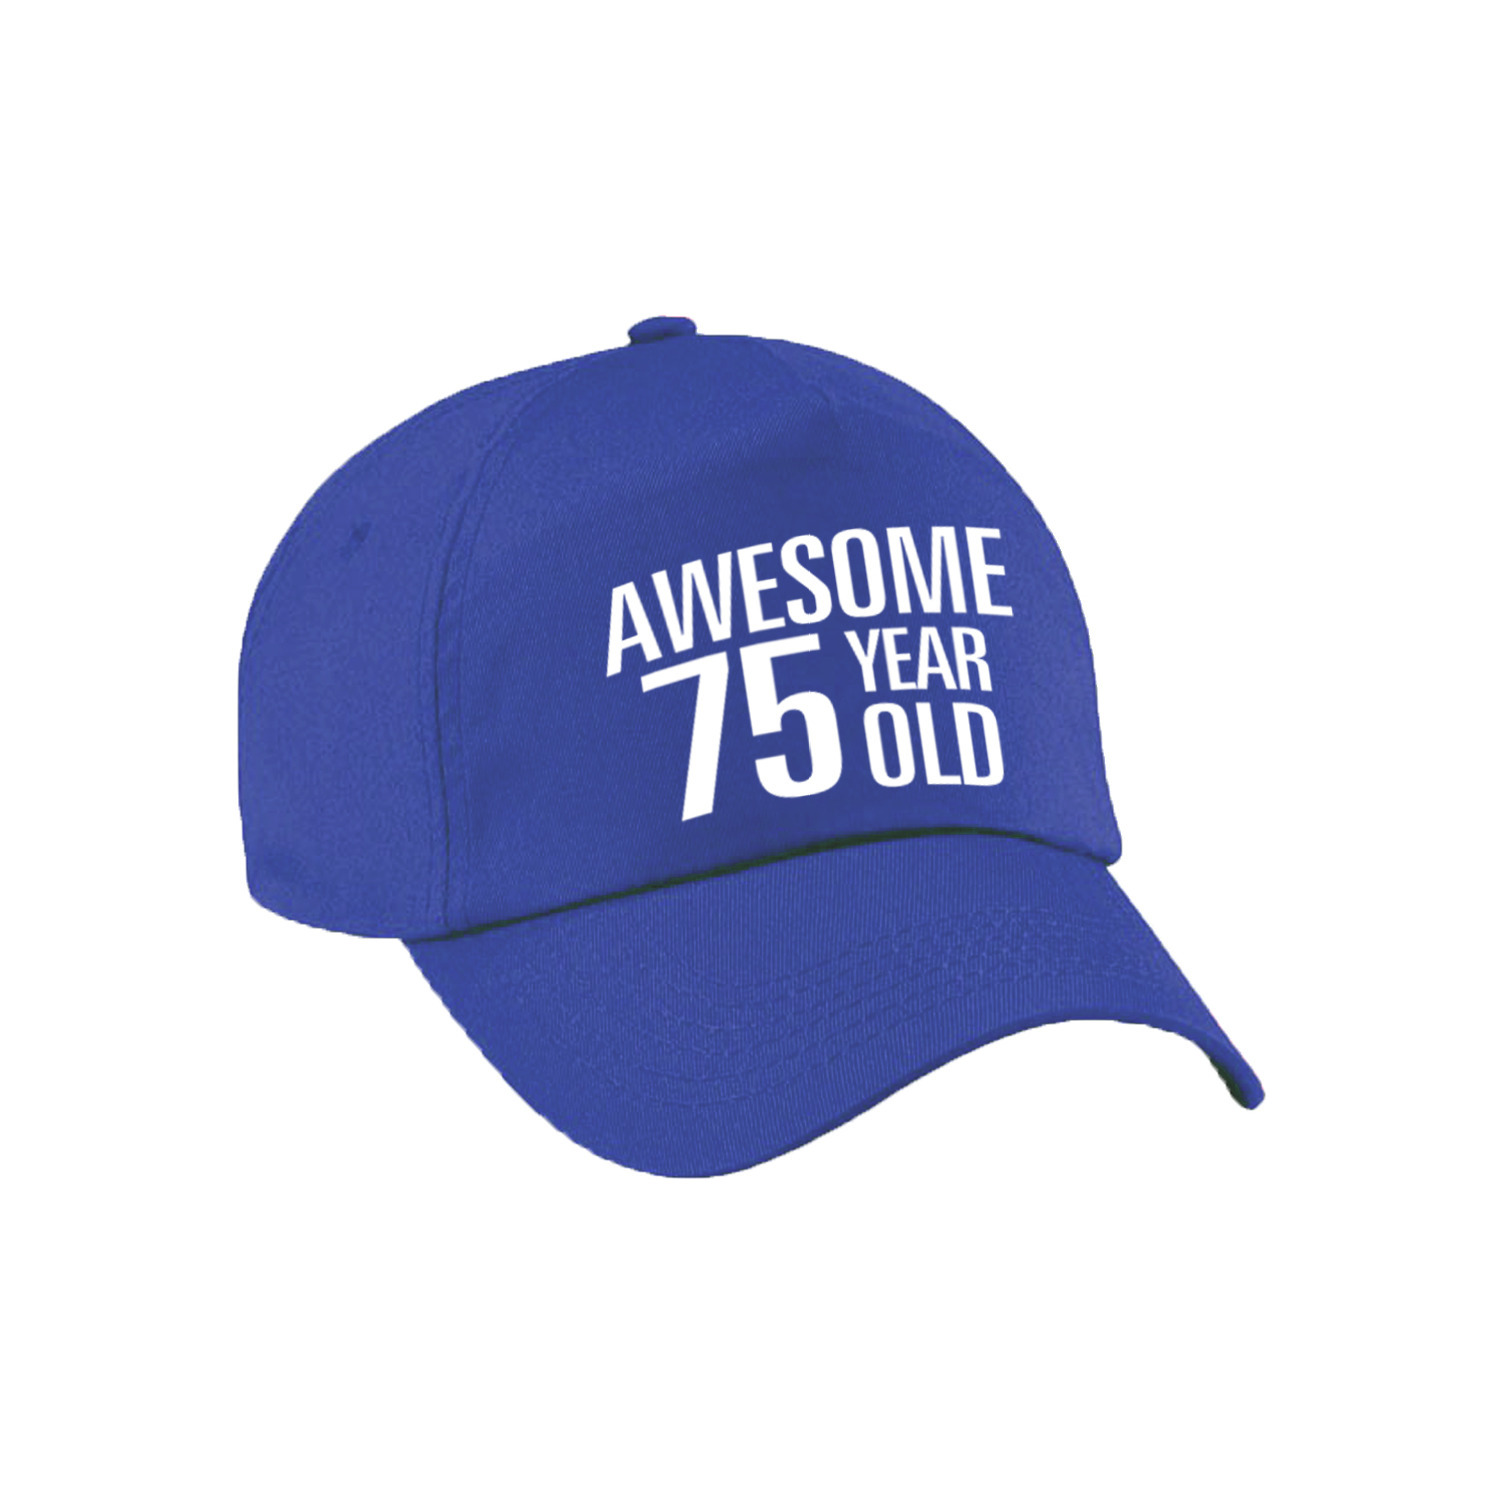 Awesome 75 year old verjaardag pet / cap blauw voor dames en heren